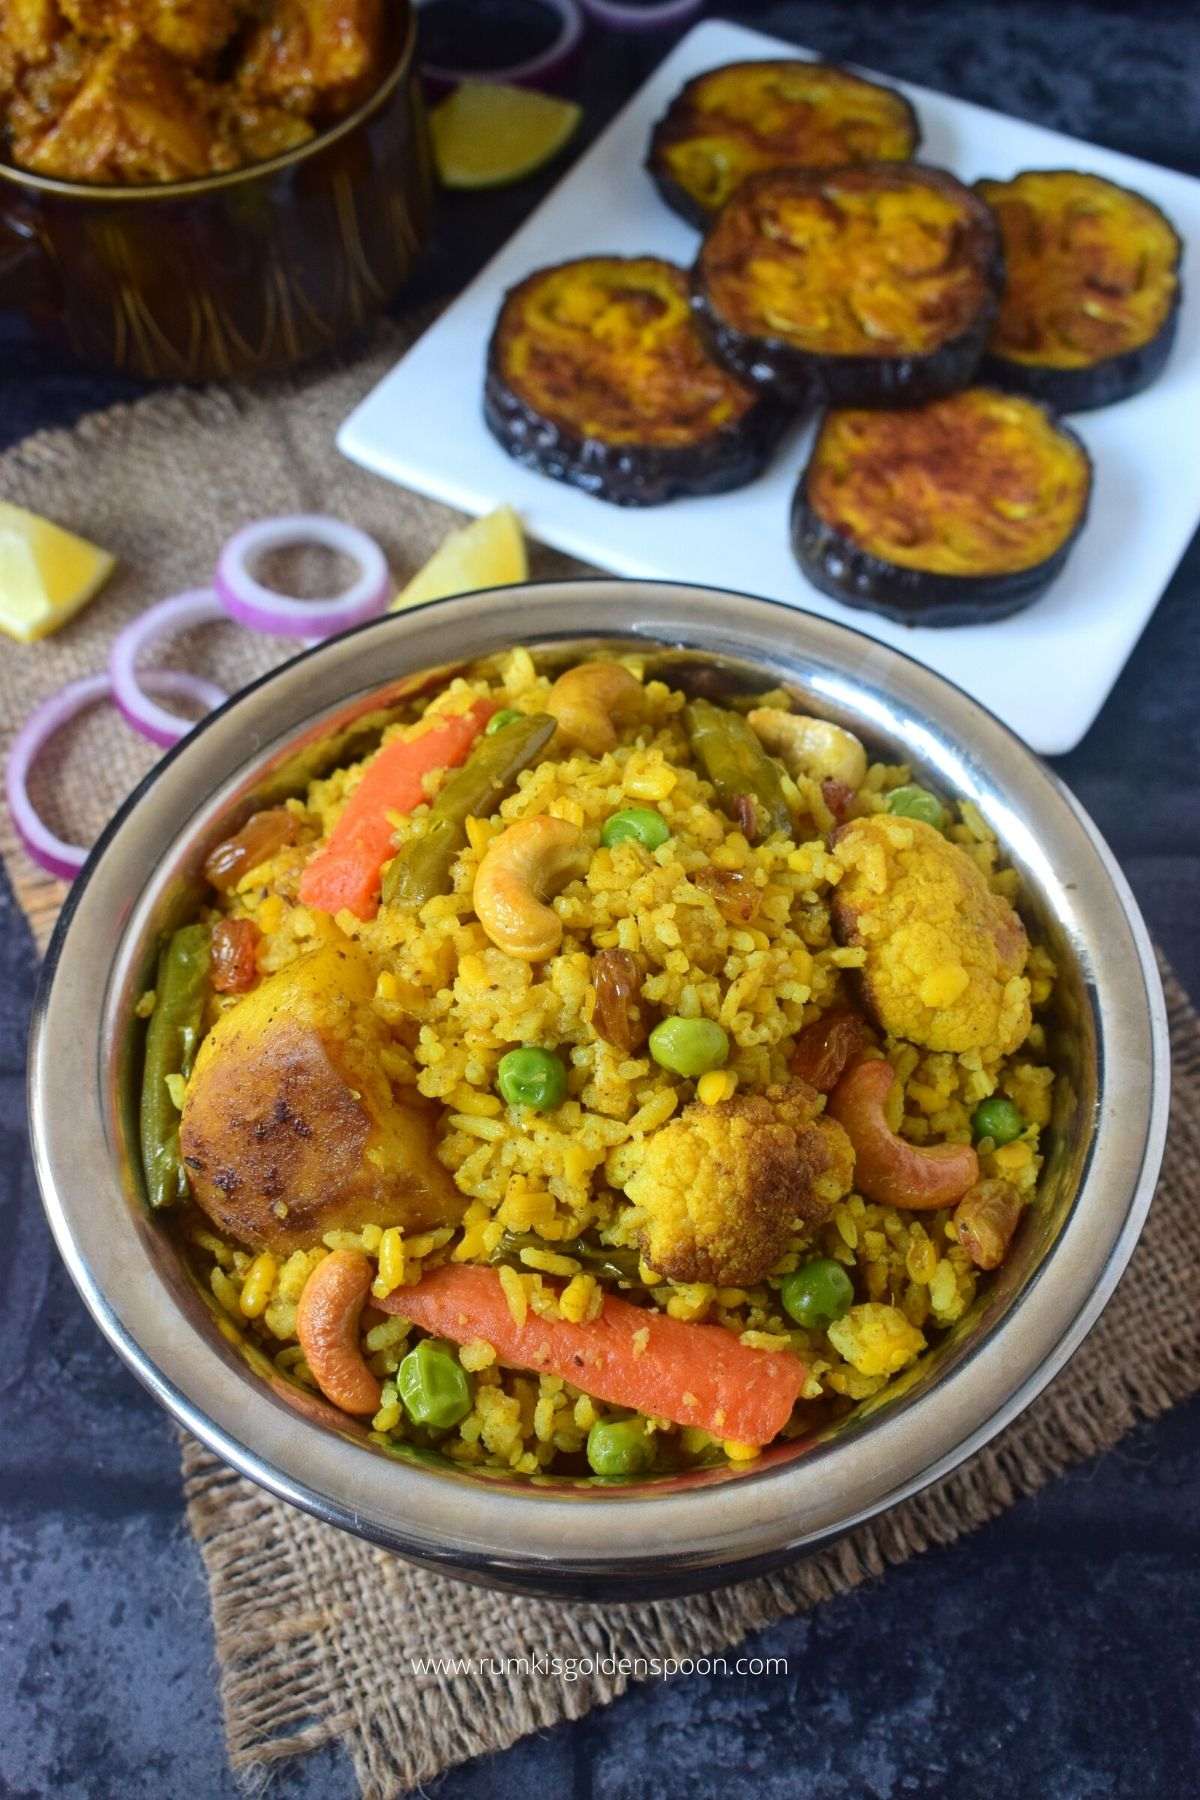 bhuni khichuri, bhuni khichuri recipe, bhuna khichuri, bhuna khichuri recipe, bengali bhuna khichuri recipe , bhuna khichuri recipe bengali, how to make bhuna khichuri, bhuna khichuri ranna, bhuna khichuri bengali recipe, how to cook bhuna khichuri, vegetable bhuna khichuri, bengali bhuna khichuri, bhuni khichdi, moong daler bhuna khichuri, mug daler bhuna khichuri, how to make bhuni khichuri, bengali bhuni khichuri, niramish bhuni khichuri, bengali bhuna khichdi, jhuro khichuri, mug daler khichuri recipe, niramish khichuri, niramish khichuri recipe, niramish khichuri ranna recipe, bengali khichuri, bengali khichuri recipe, khichuri bengali recipe, recipe for bengali khichuri, bhoger khichuri, bhoger bhuna khichuri, bhoger bhuni khichuri, bengali recipe, bengali recipes, bengali food, bengali food recipes, recipes of bengali food, traditional bengali food, bengali recipes veg, niramish recipe, traditional food of Bengali, bengali veg recipes, bengali vegetarian recipe, without onion garlic recipe, no onion no garlic recipe, Rumki's Golden Spoon